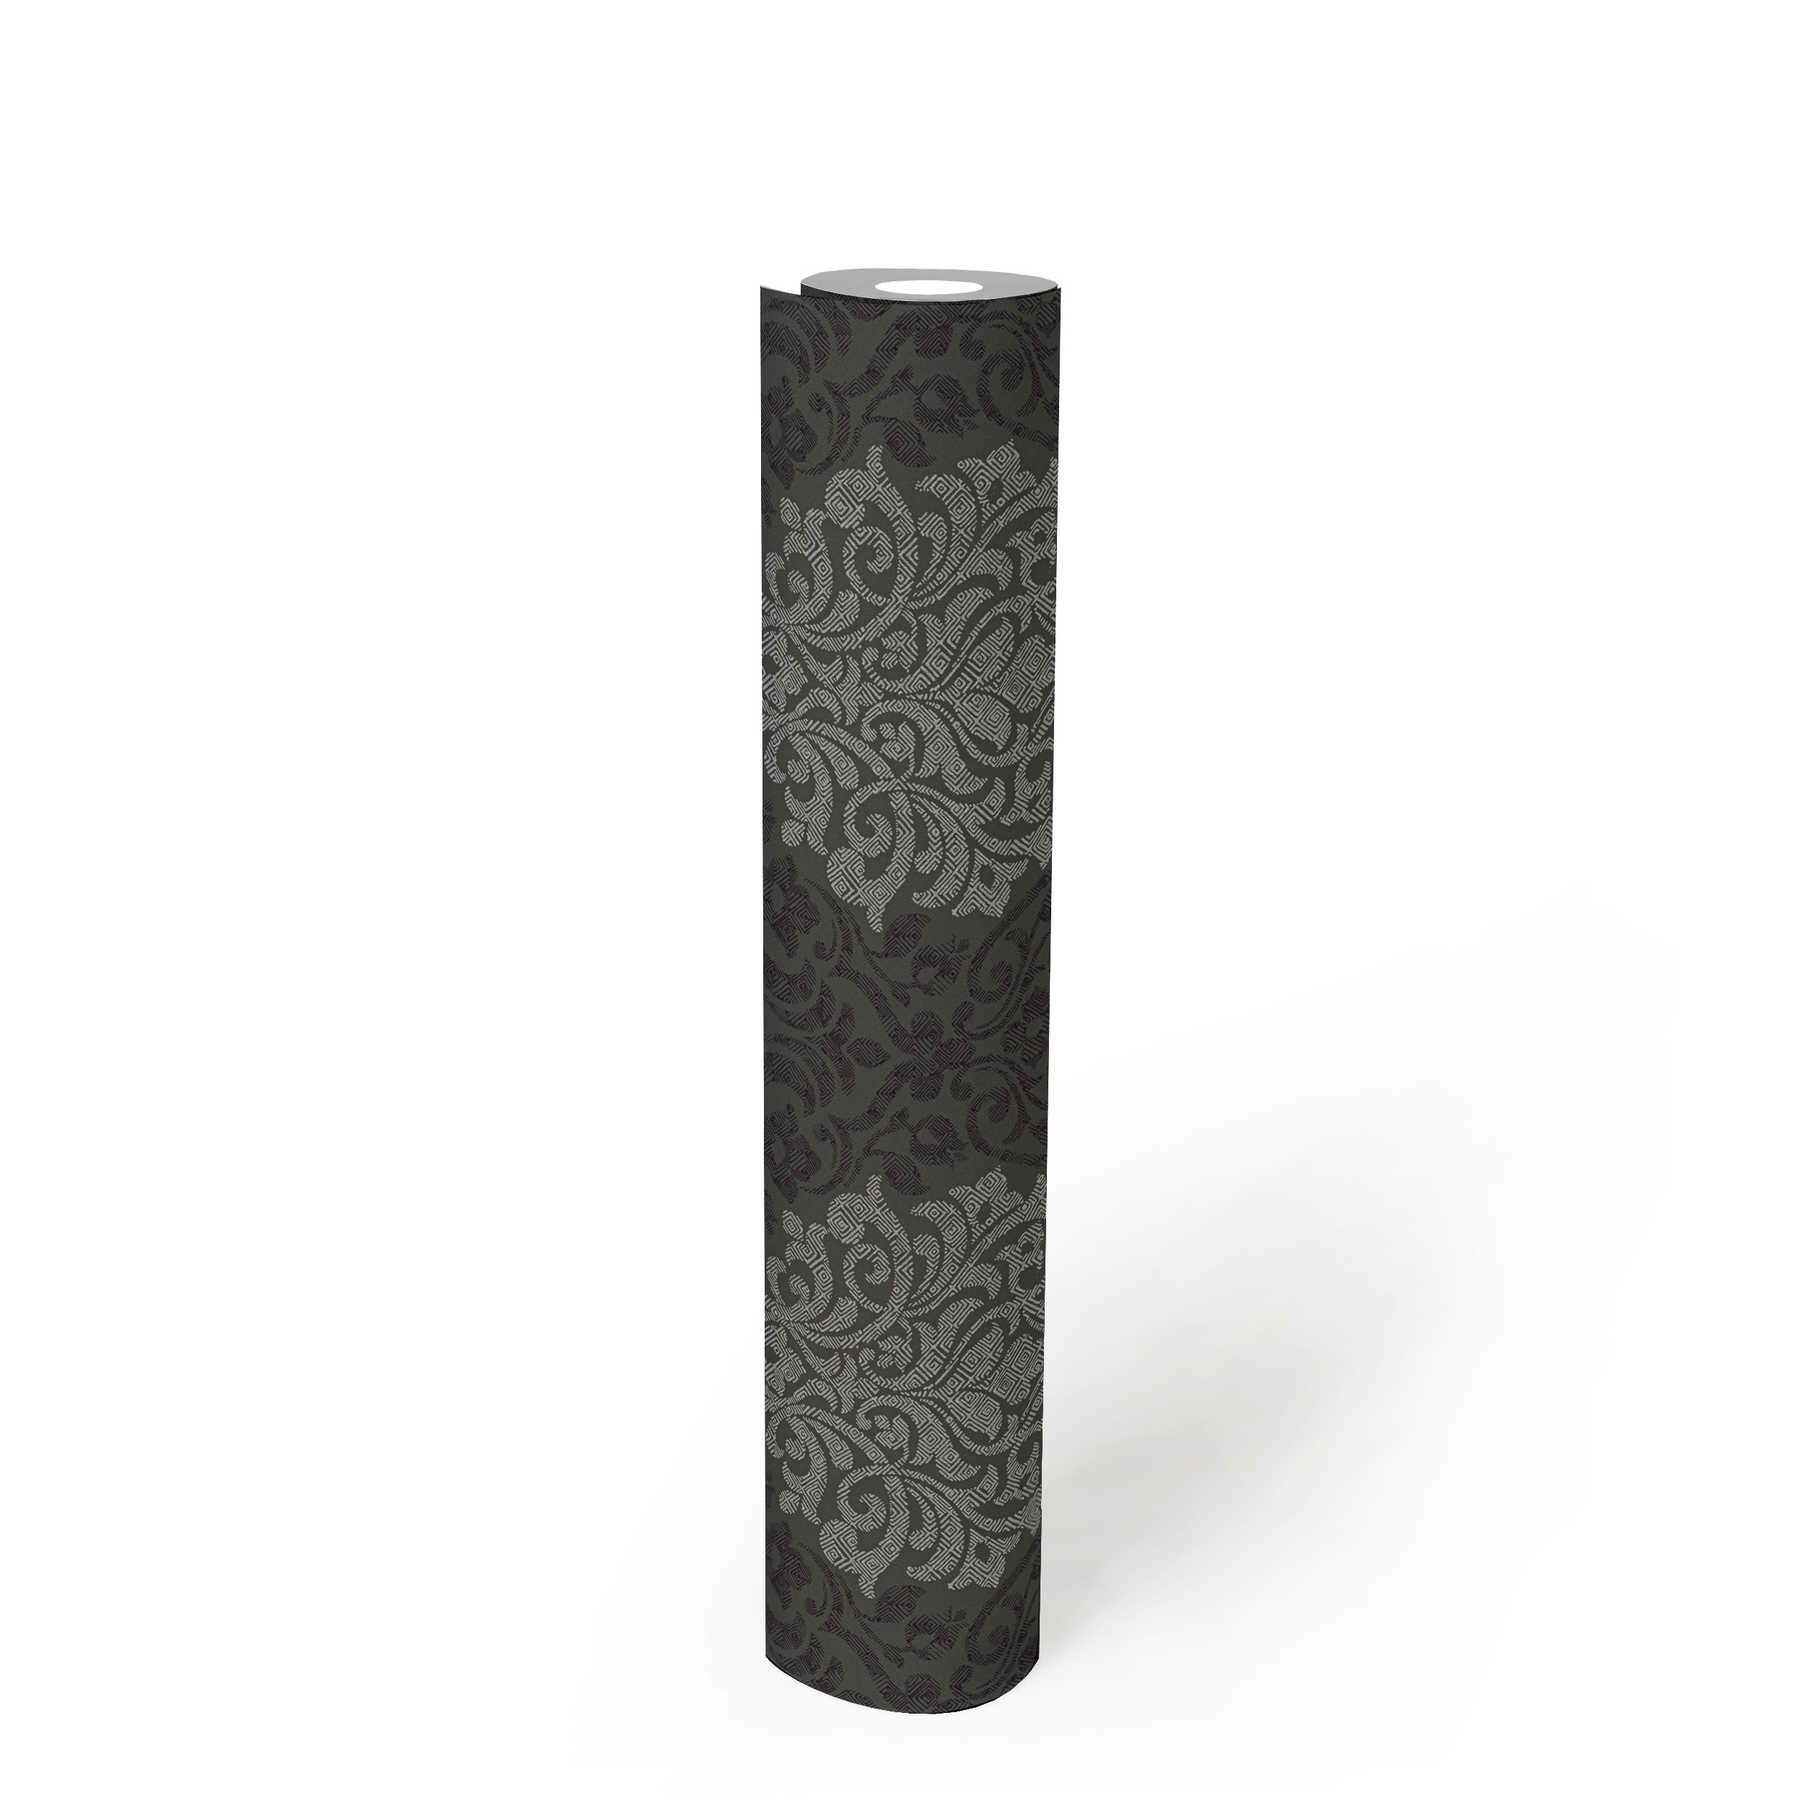             Florale Ornamenttapete Rautenmuster im Ethno-Stil – Silber, Schwarz, Grau
        